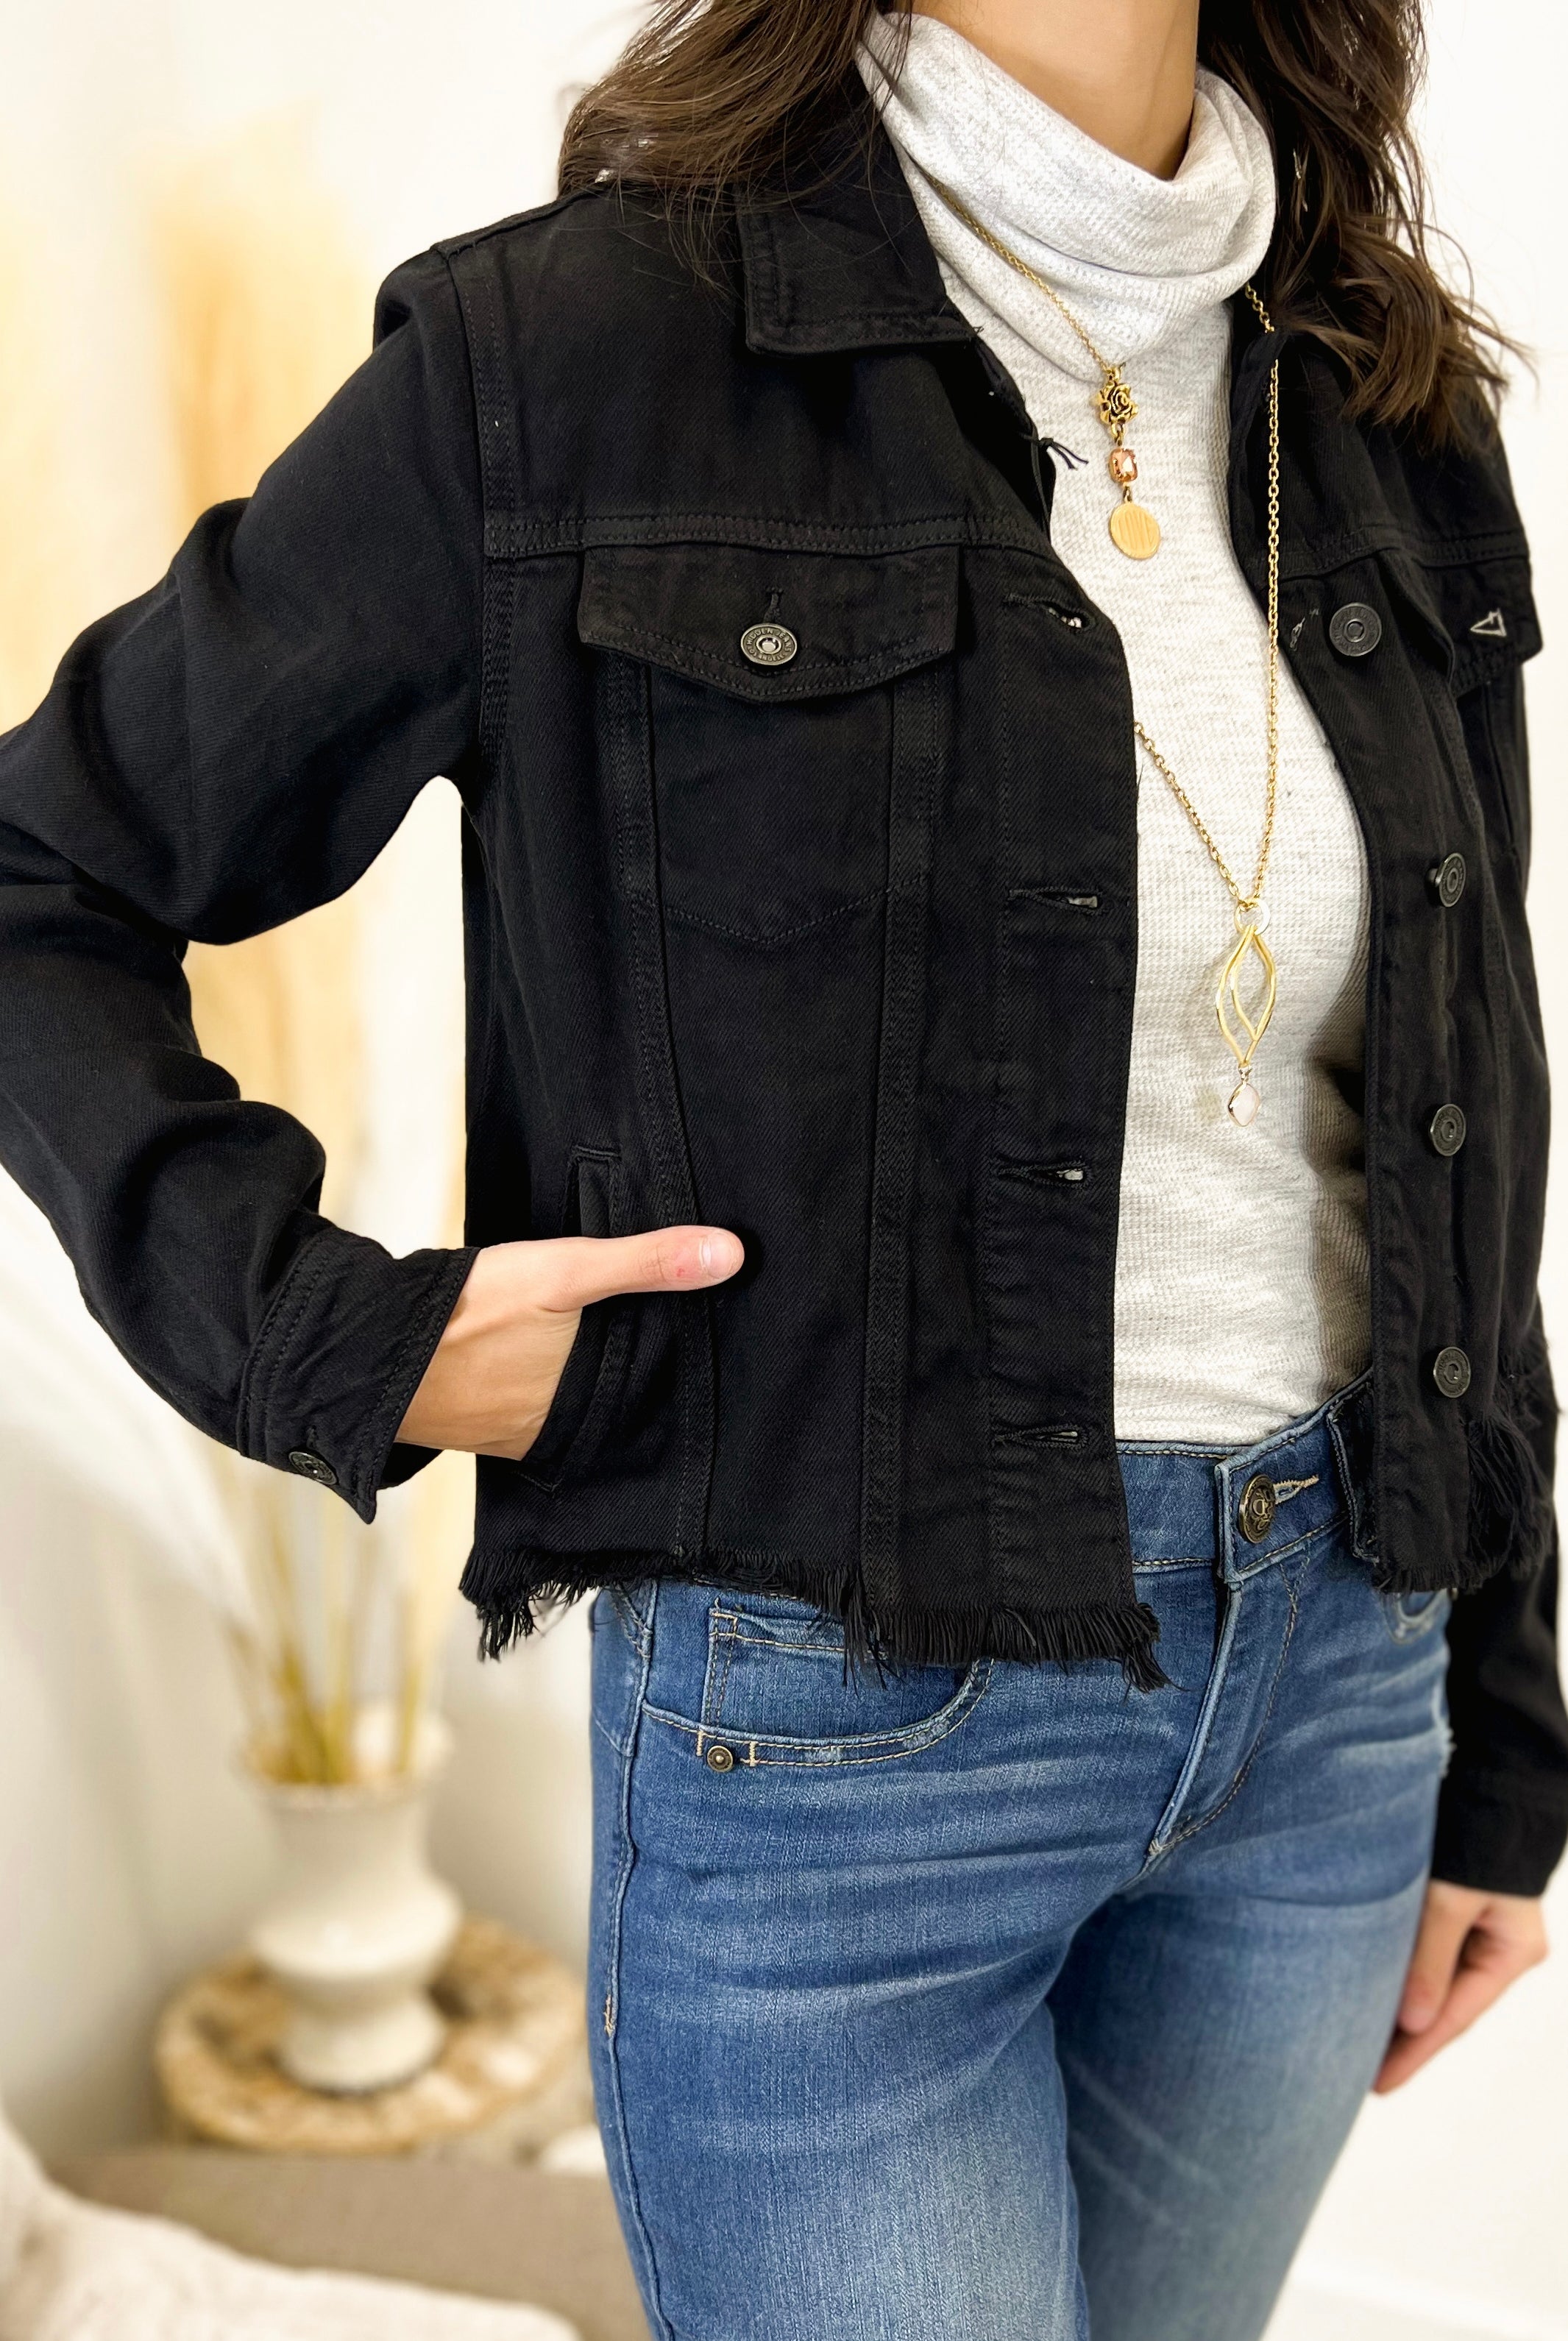 Mainstream Boutique Stillwater Women’s Denim Fitted Jacket